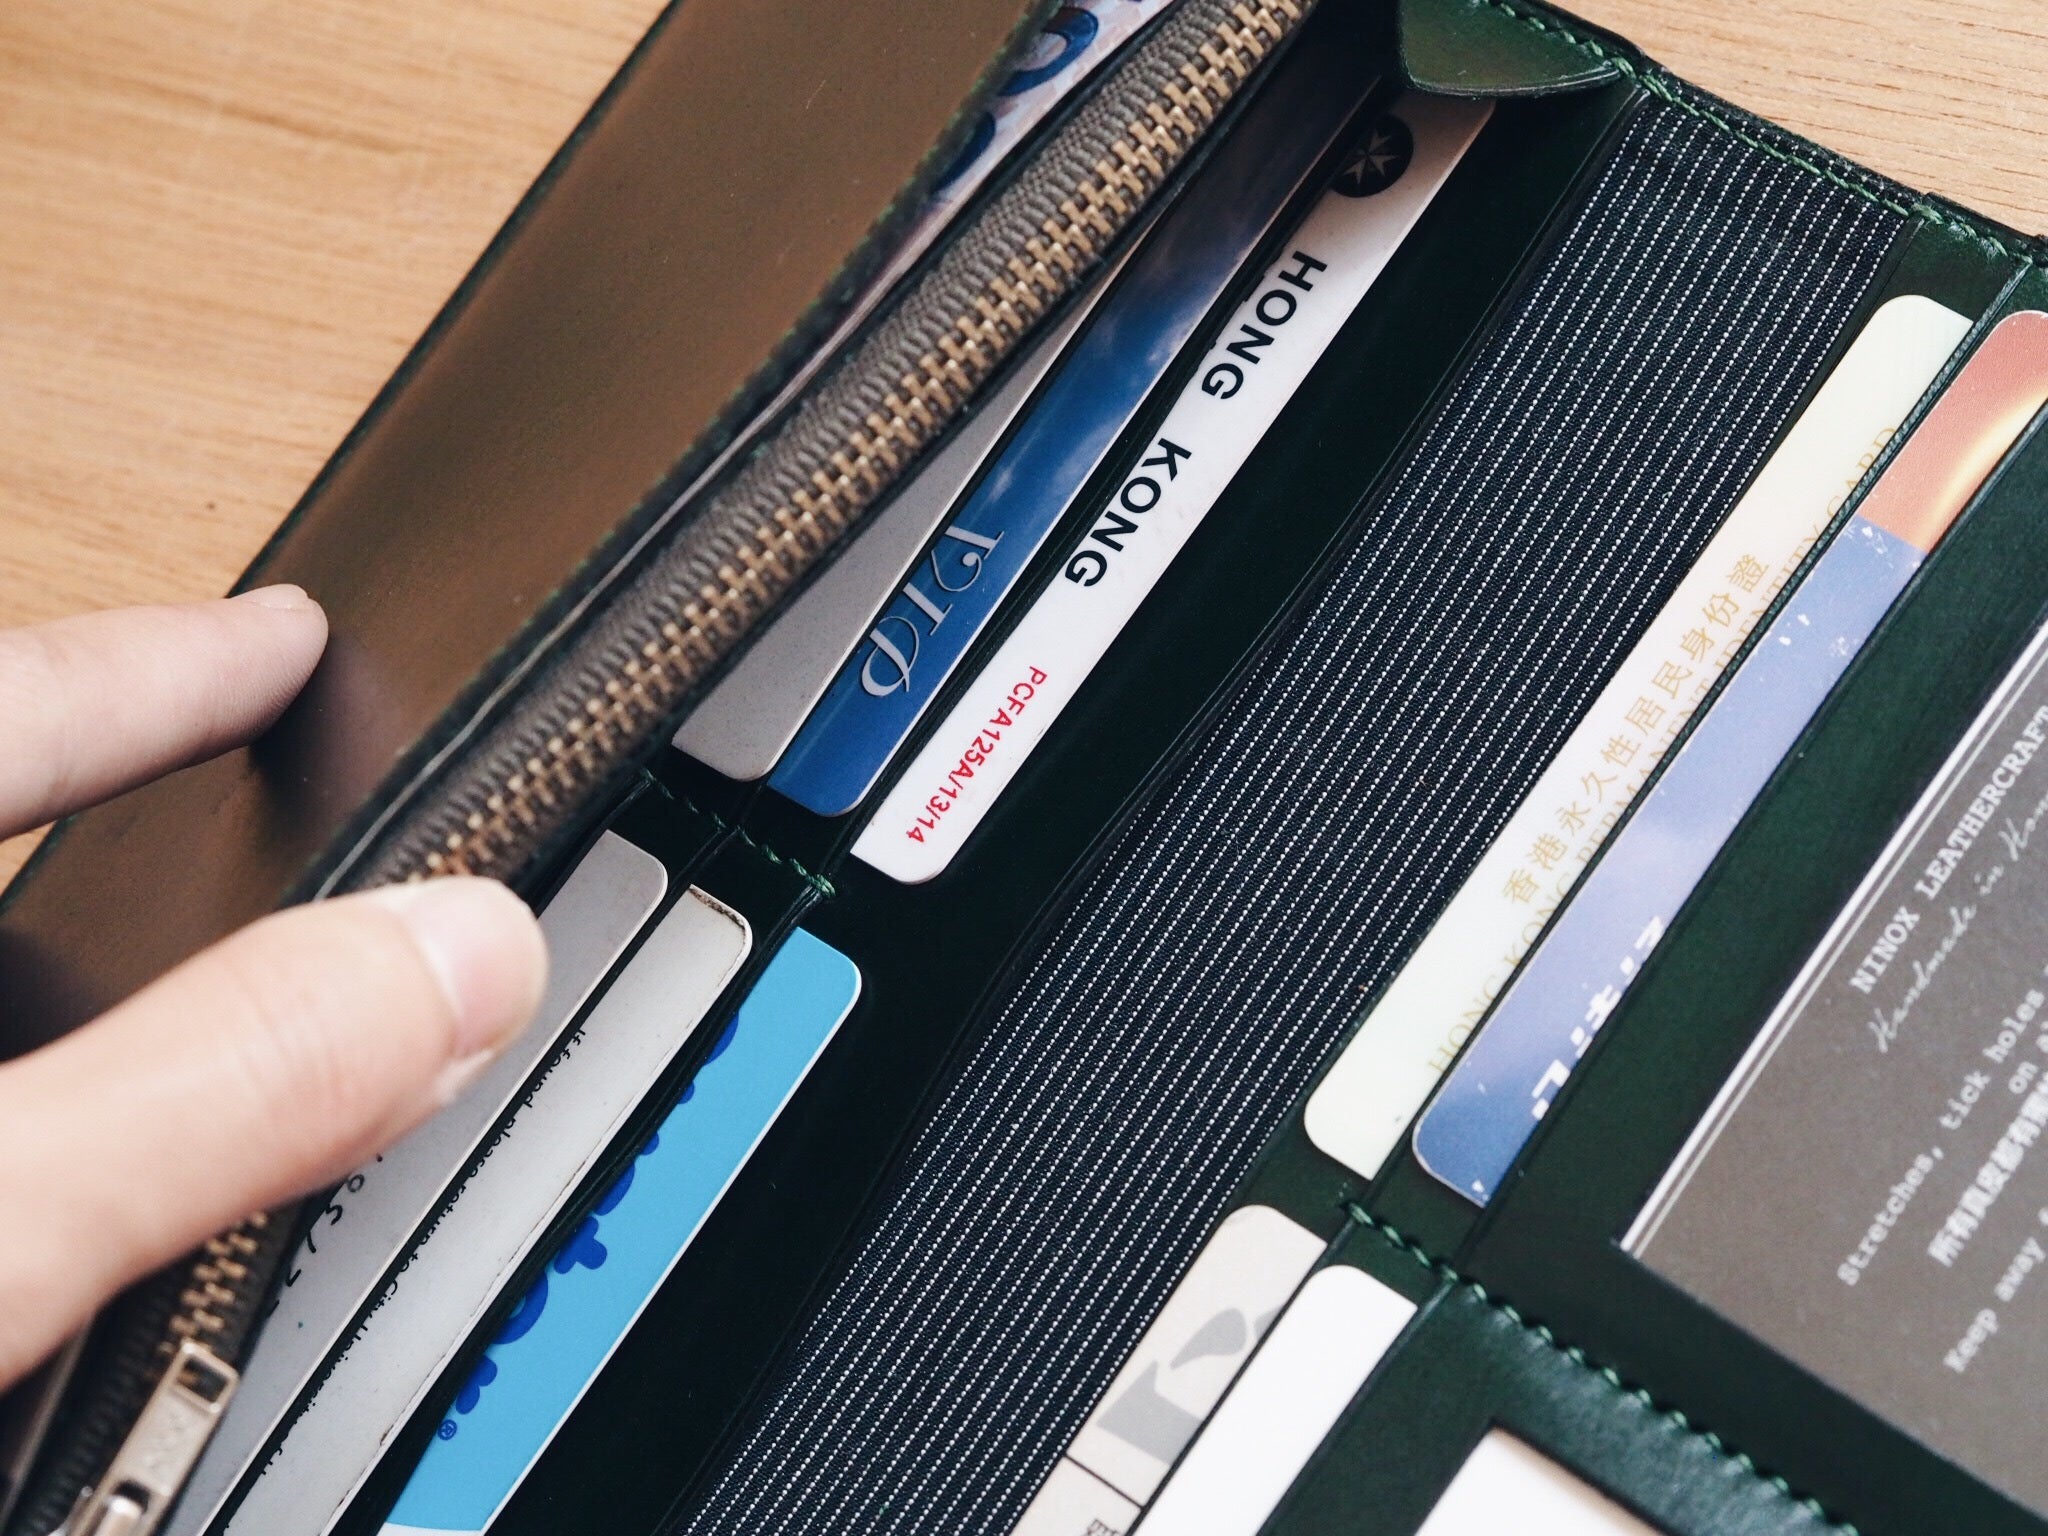 Mega Long Wallet with 10 card slots and coins bag